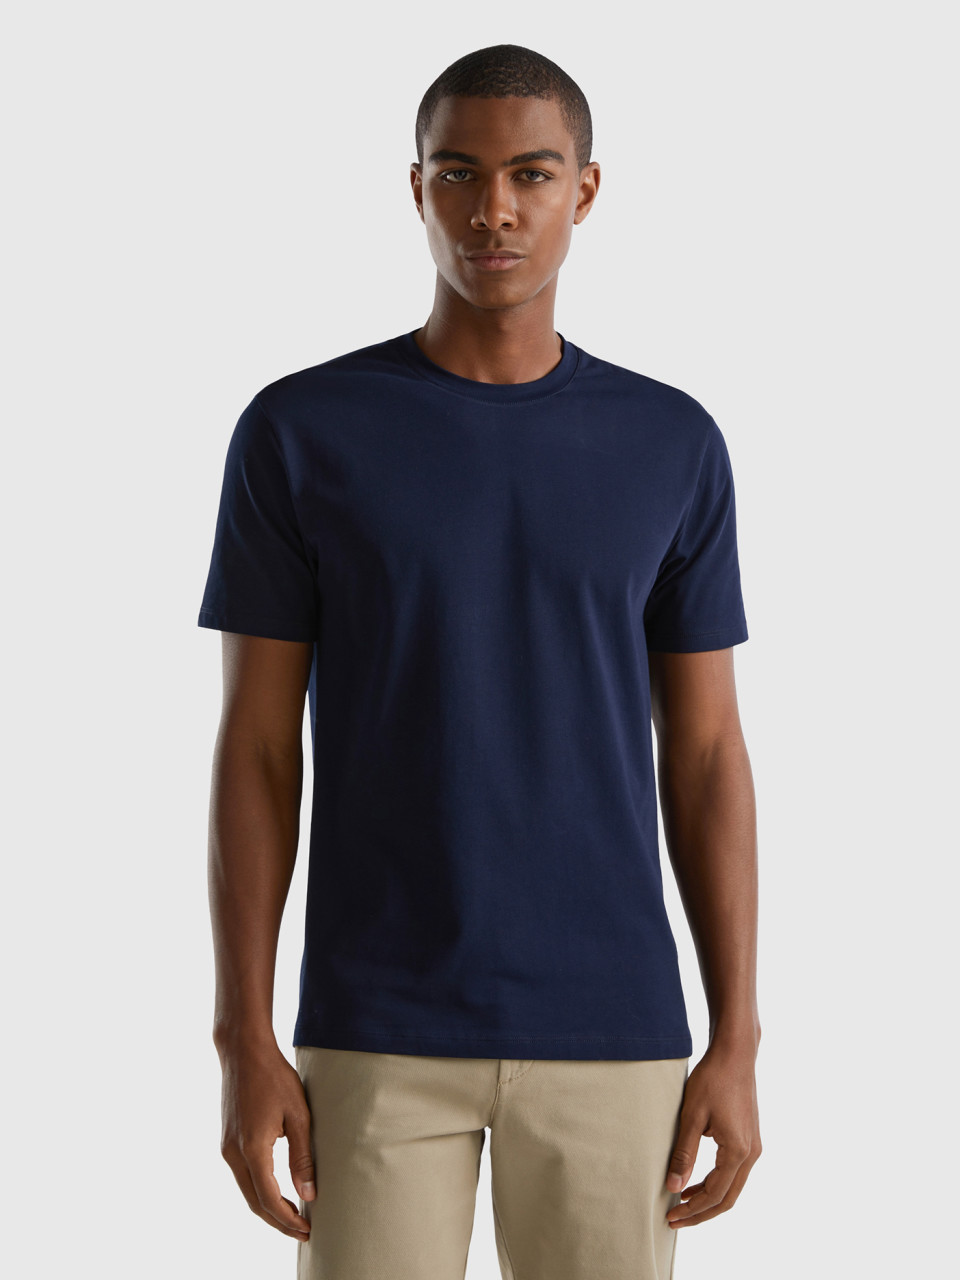 Benetton, Slim Fit T-shirt In Stretch Cotton, Dark Blue, Men